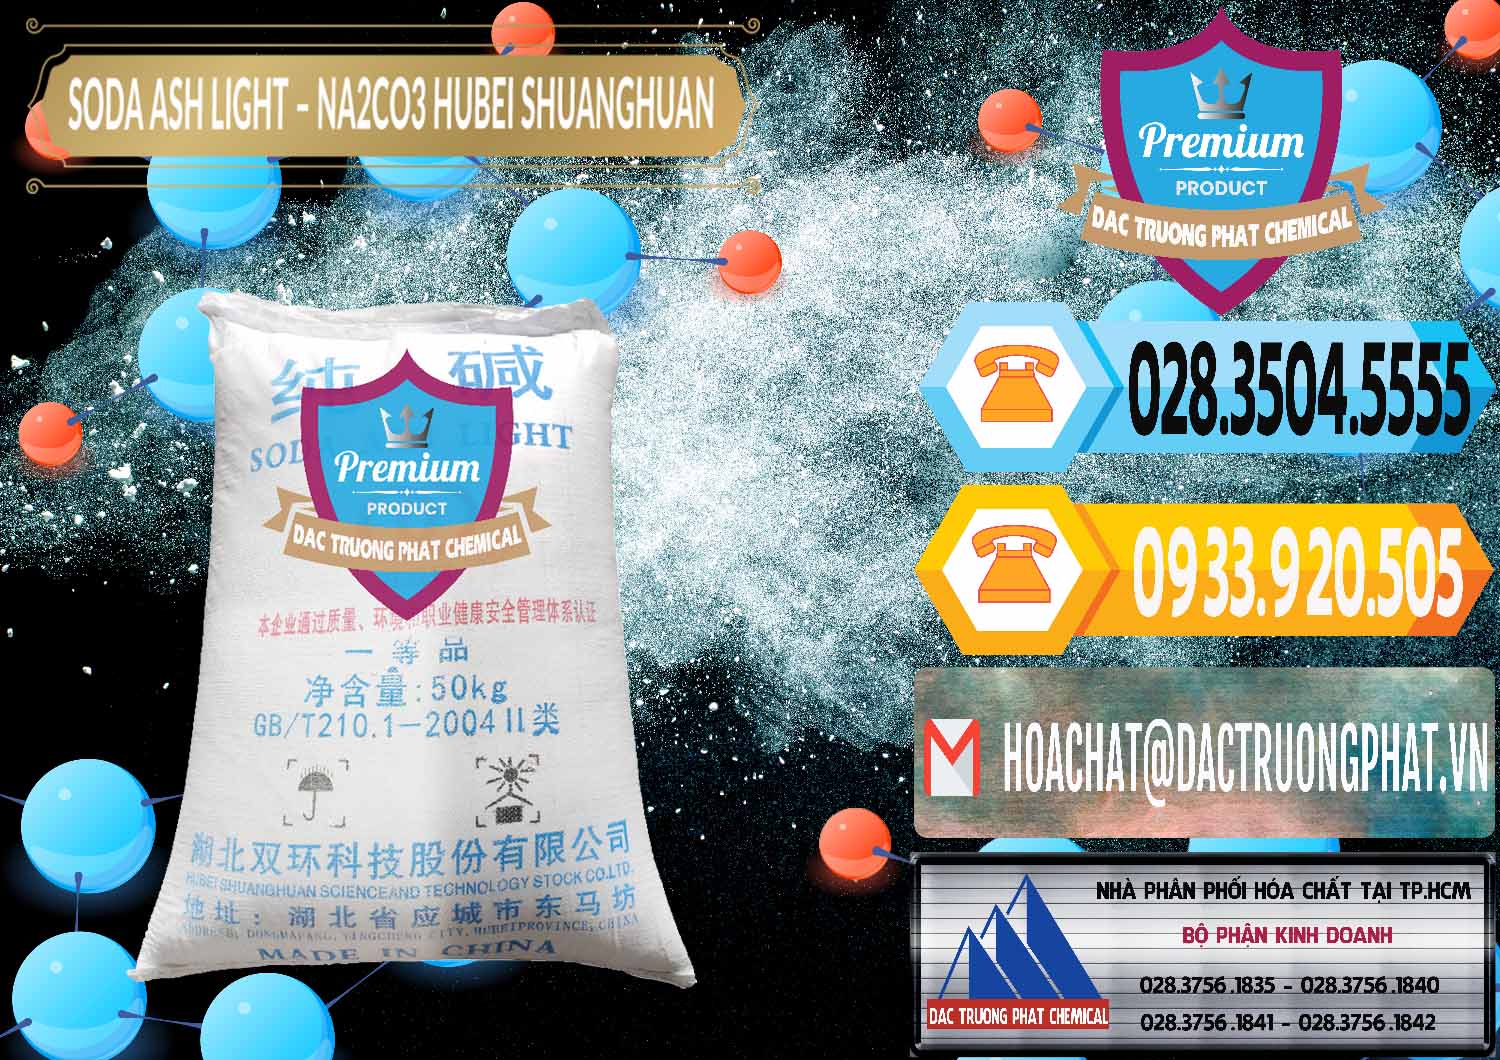 Nơi cung ứng và bán Soda Ash Light - NA2CO3 2 Vòng Tròn Hubei Shuanghuan Trung Quốc China - 0130 - Công ty phân phối và cung ứng hóa chất tại TP.HCM - hoachattayrua.net